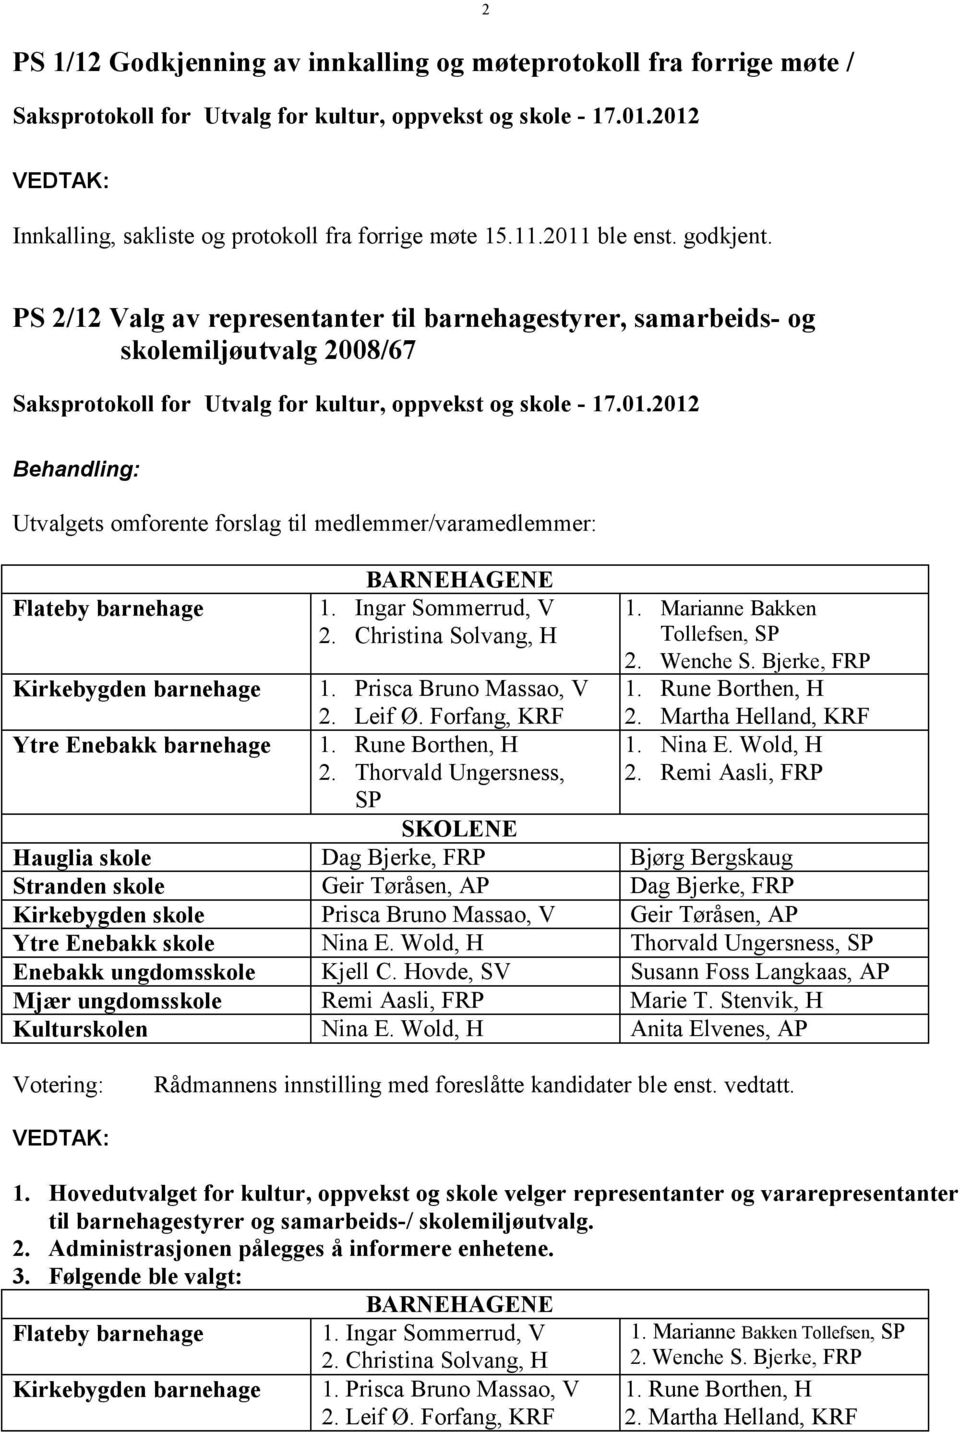 Ingar Sommerrud, V 2. Christina Solvang, H 1. Marianne Bakken Tollefsen, SP 2. Wenche S. Bjerke, FRP 1. Rune Borthen, H 2. Martha Helland, KRF 1. Nina E. Wold, H 2.